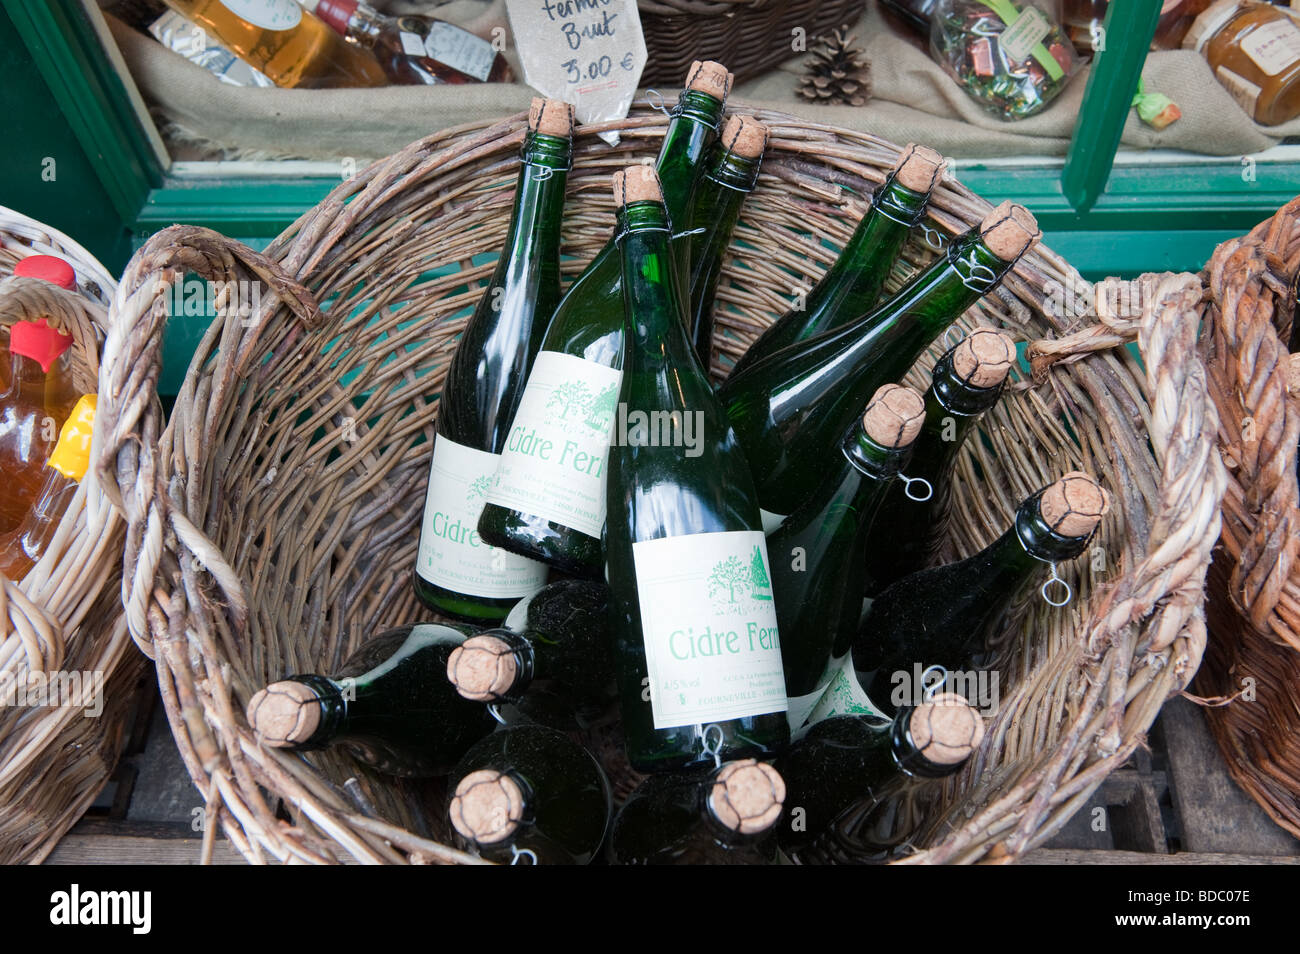 Lokale Apfelwein auf Verkauf in Honfleur, Normandie, Frankreich Stockfoto